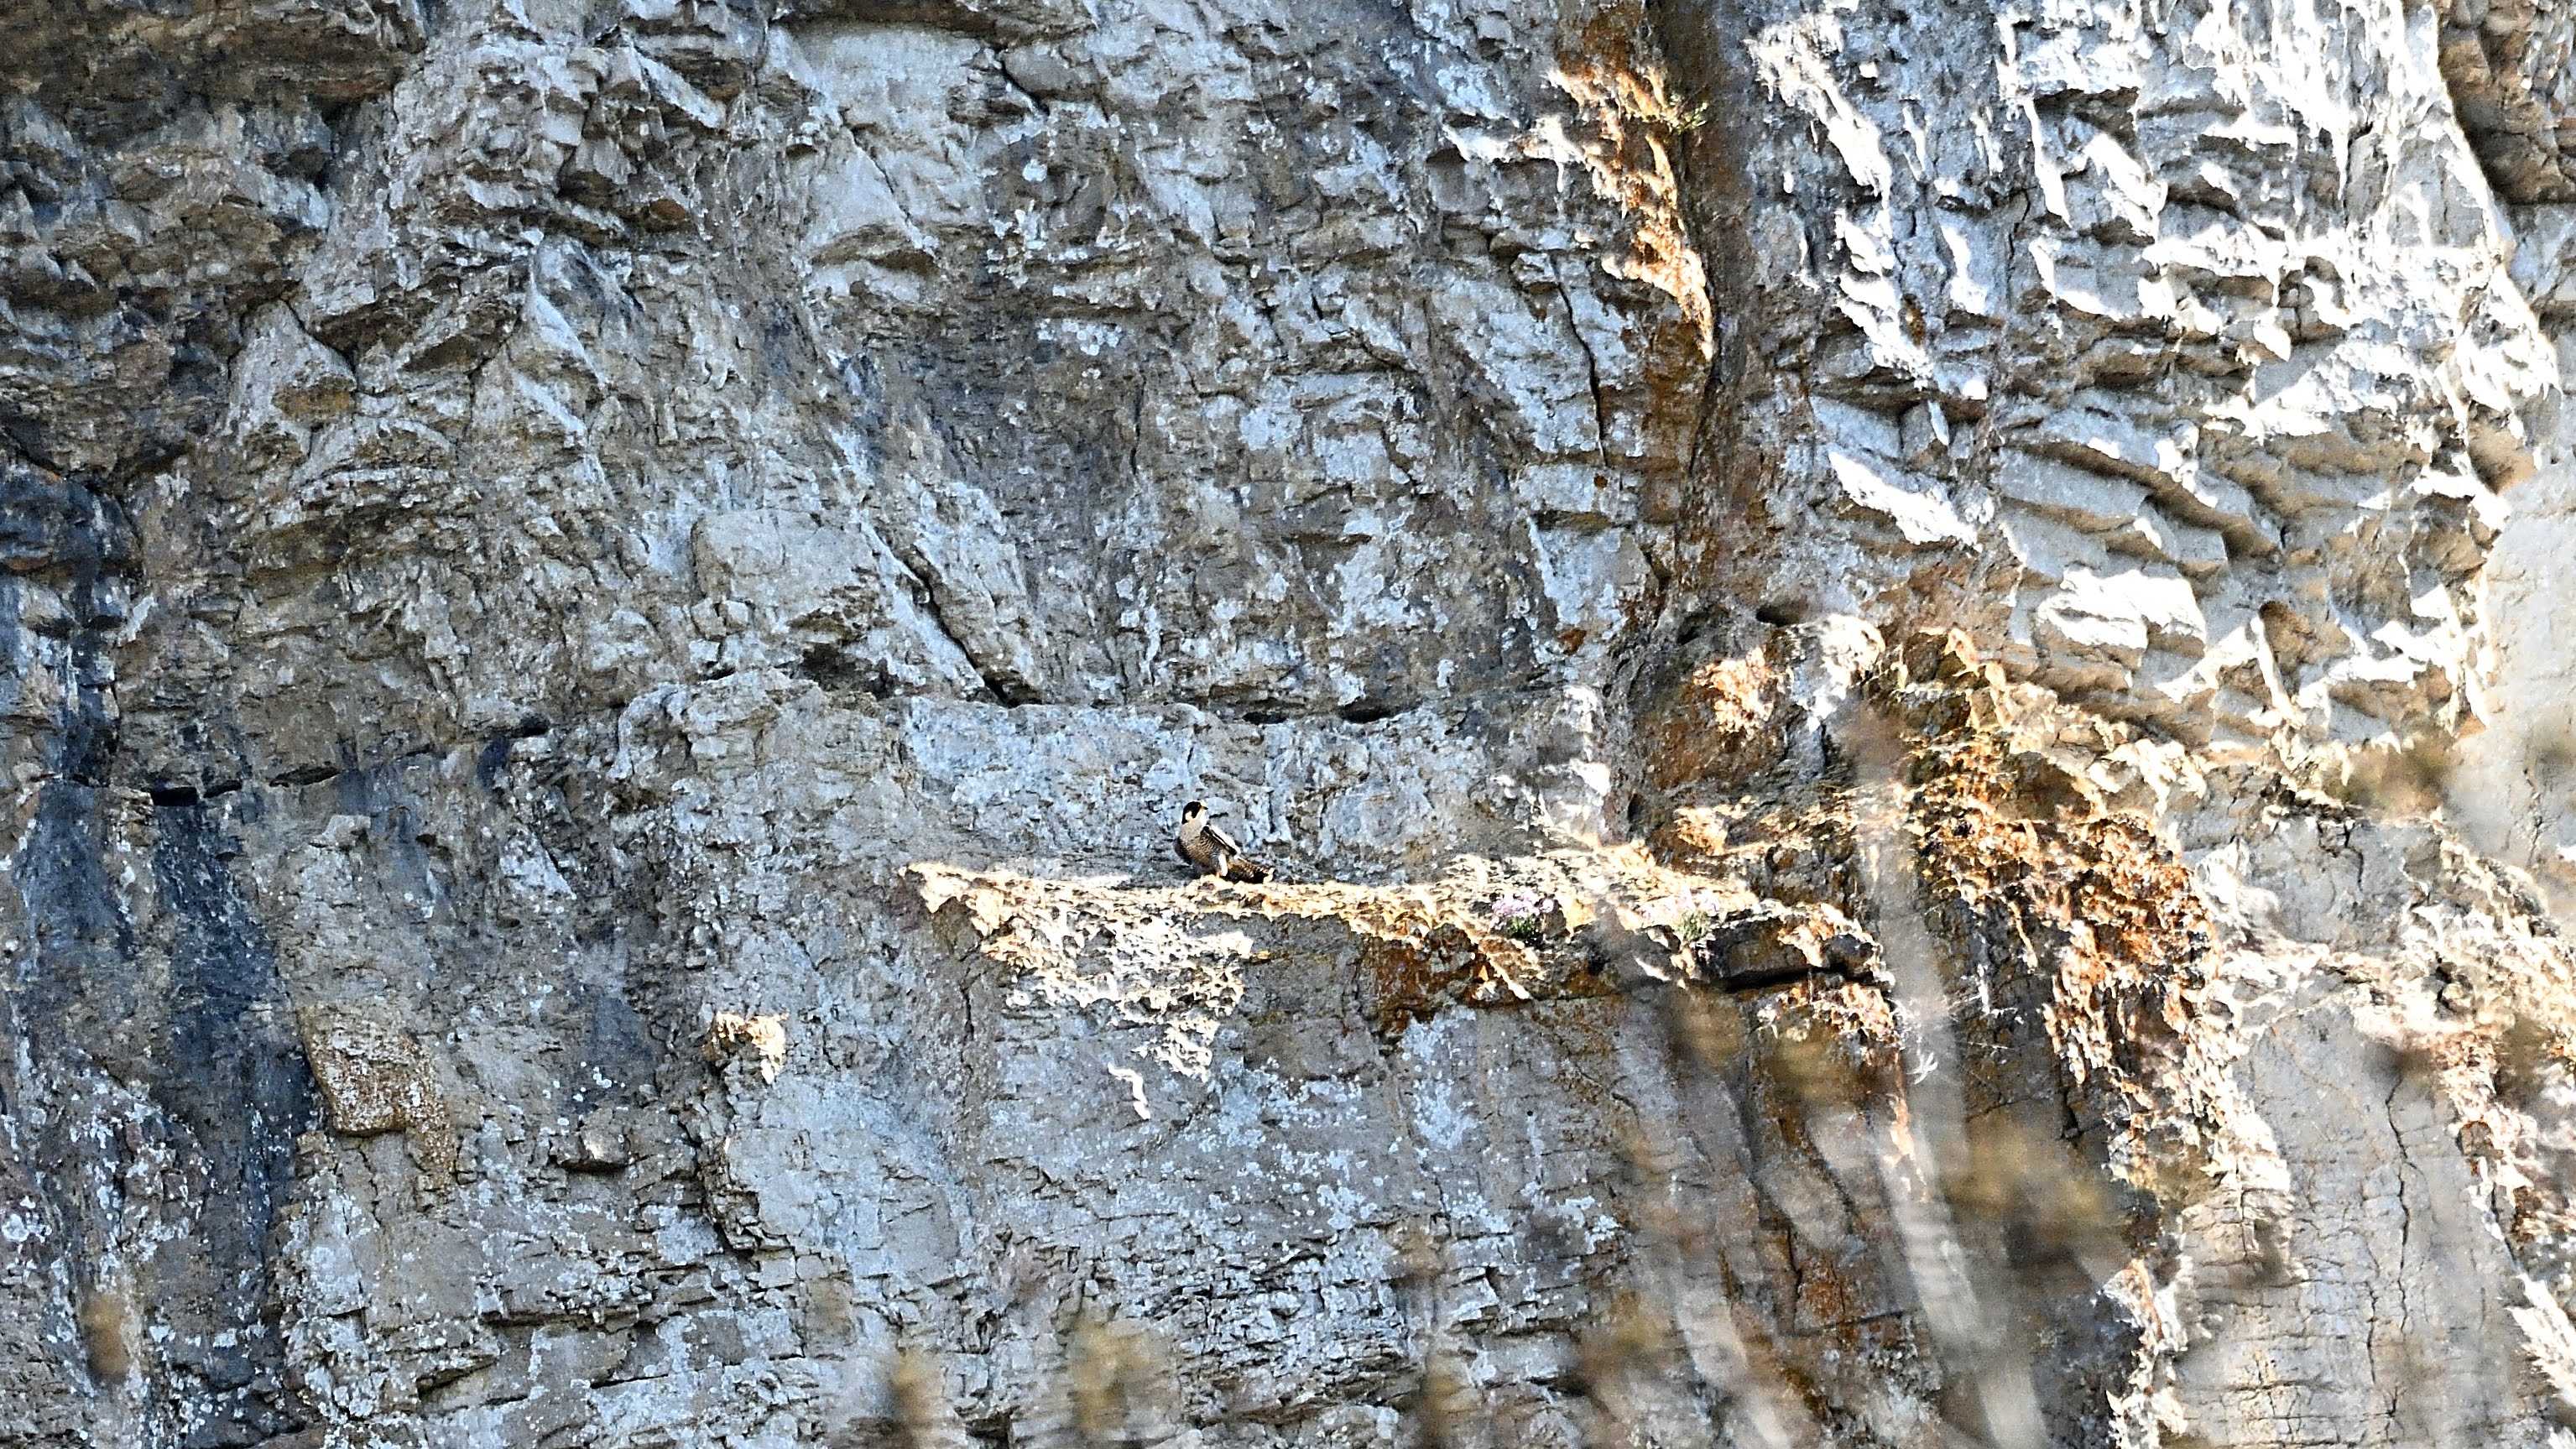 Falcon crag